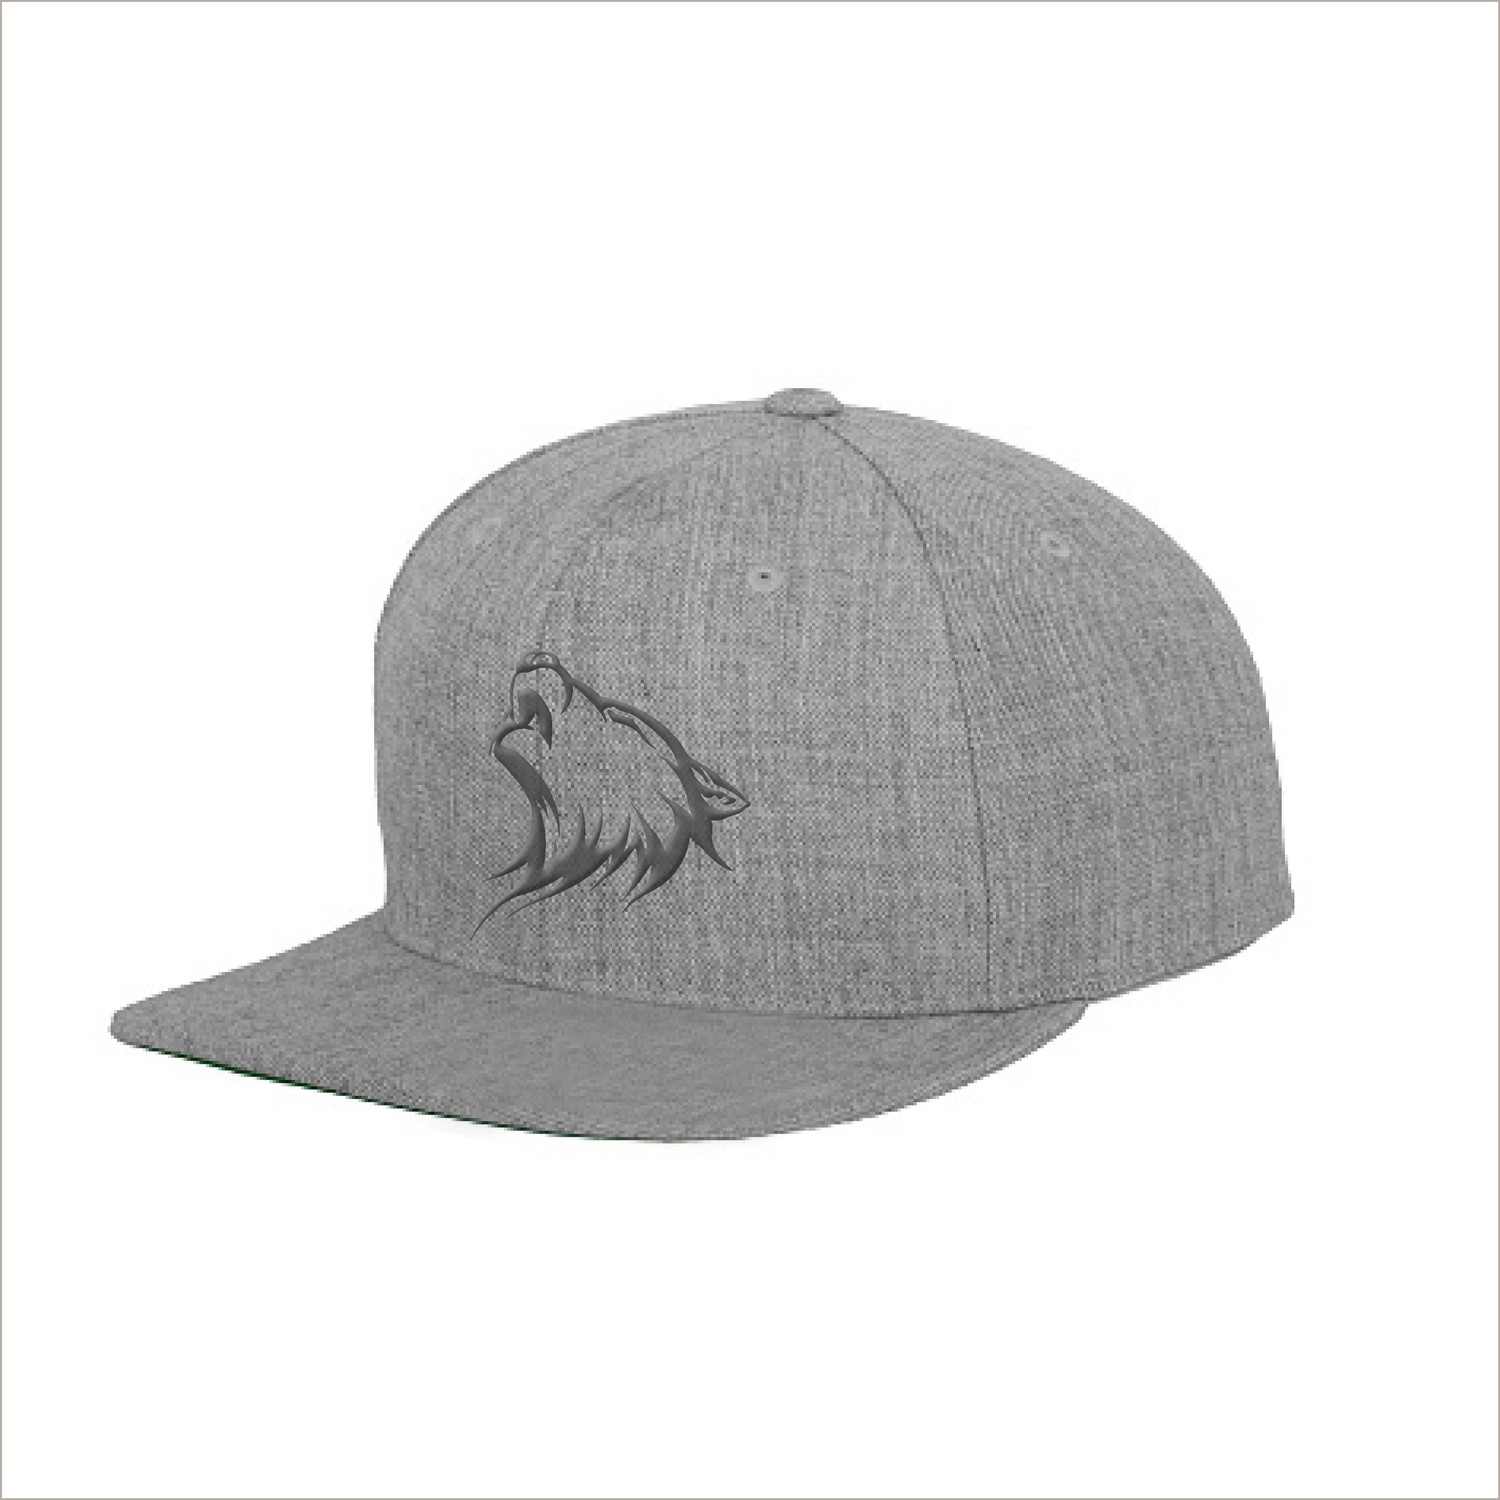 Snapback Cap - All Grey